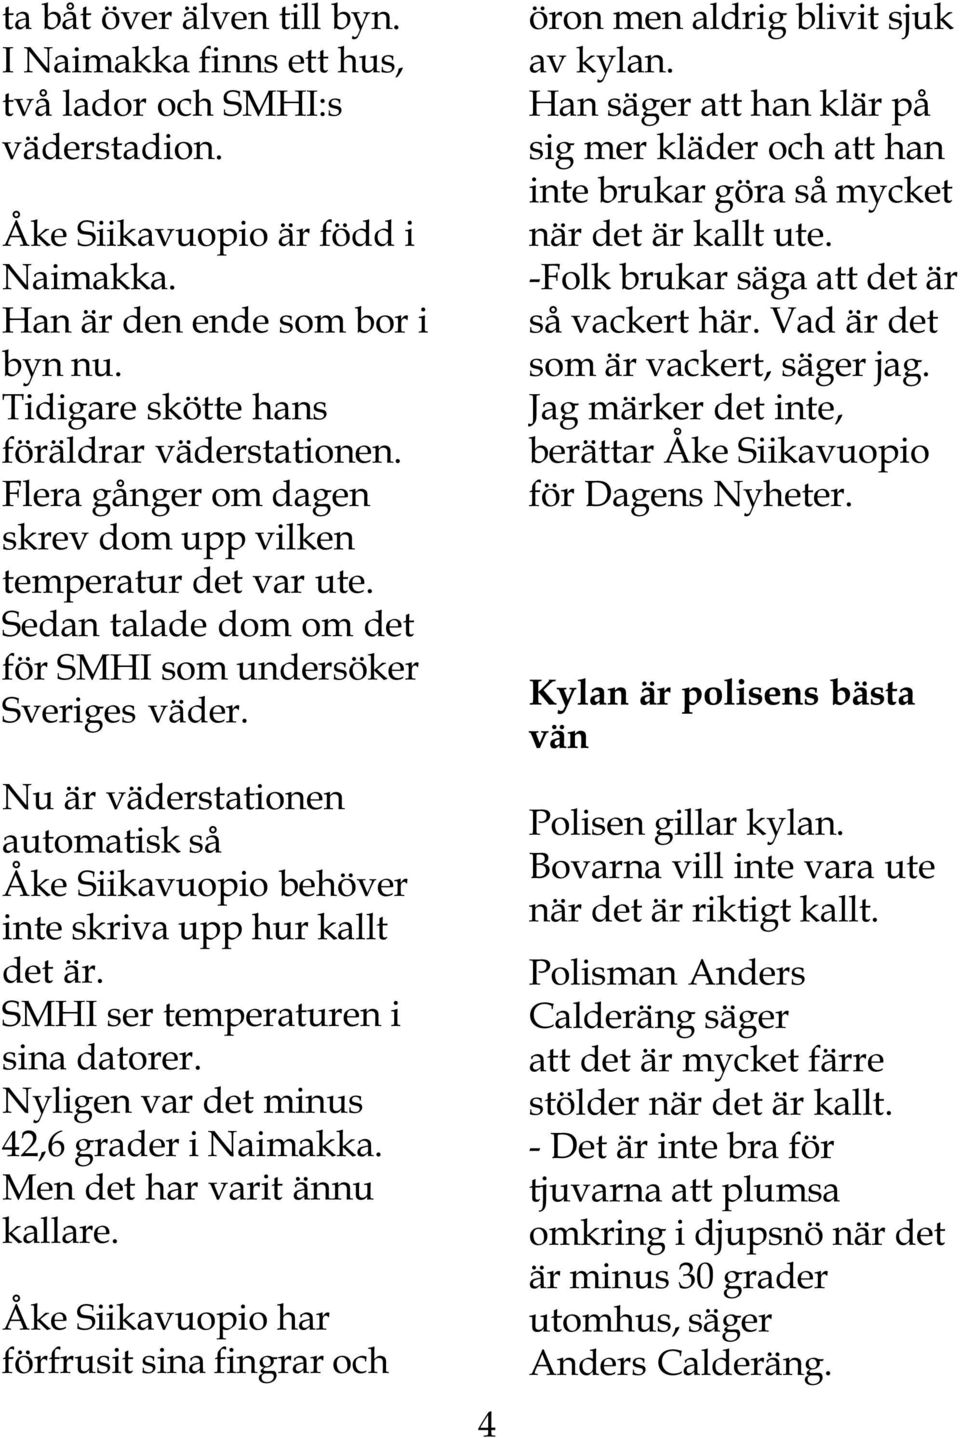 Nu är väderstationen automatisk så Åke Siikavuopio behöver inte skriva upp hur kallt det är. SMHI ser temperaturen i sina datorer. Nyligen var det minus 42,6 grader i Naimakka.